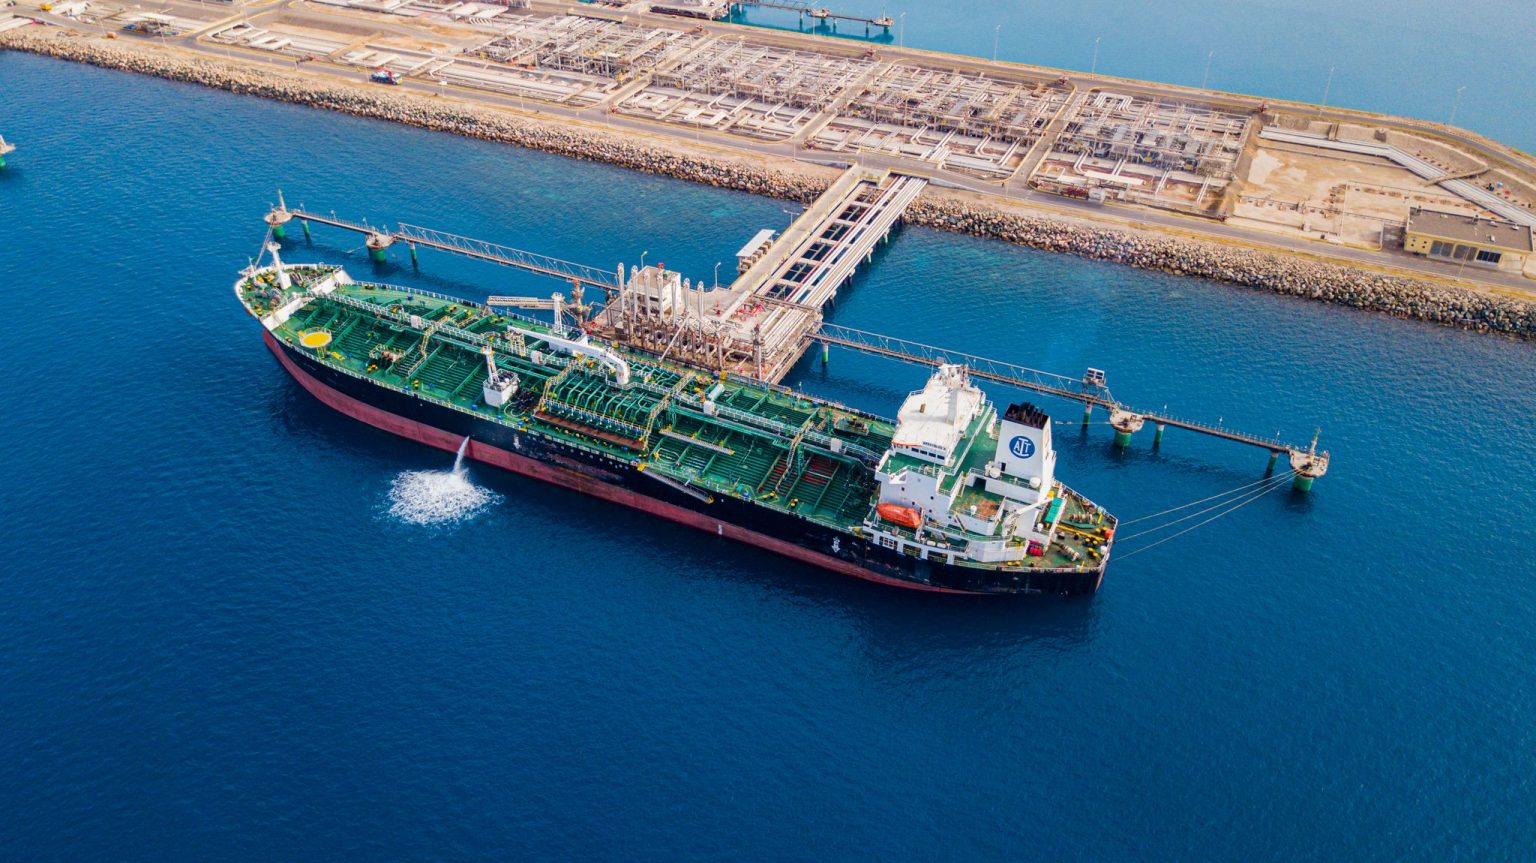 ميناء الملك فهد الصناعي في ينبع يشهد إقامة مركز متكامل لتزويد السفن بالوقود